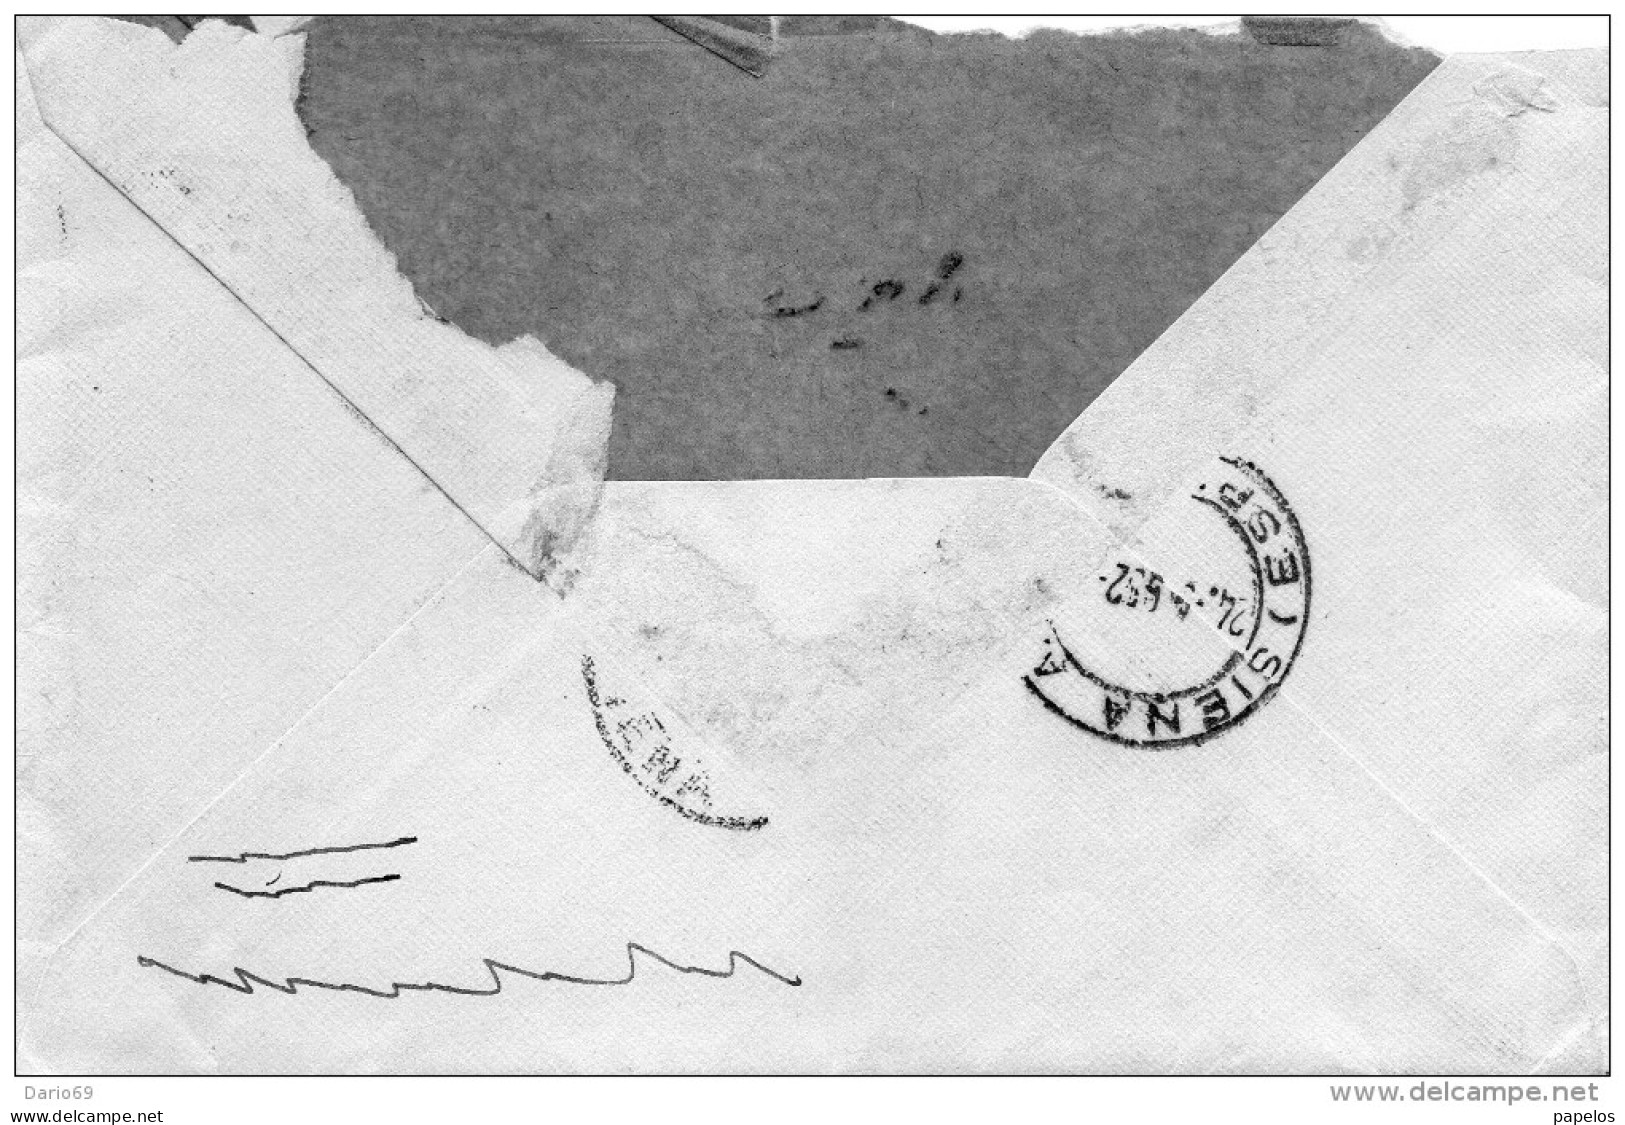 1952  LETTERA ESPRESSO  CON ANNULLO ORVIETO TERNI - Express/pneumatic Mail